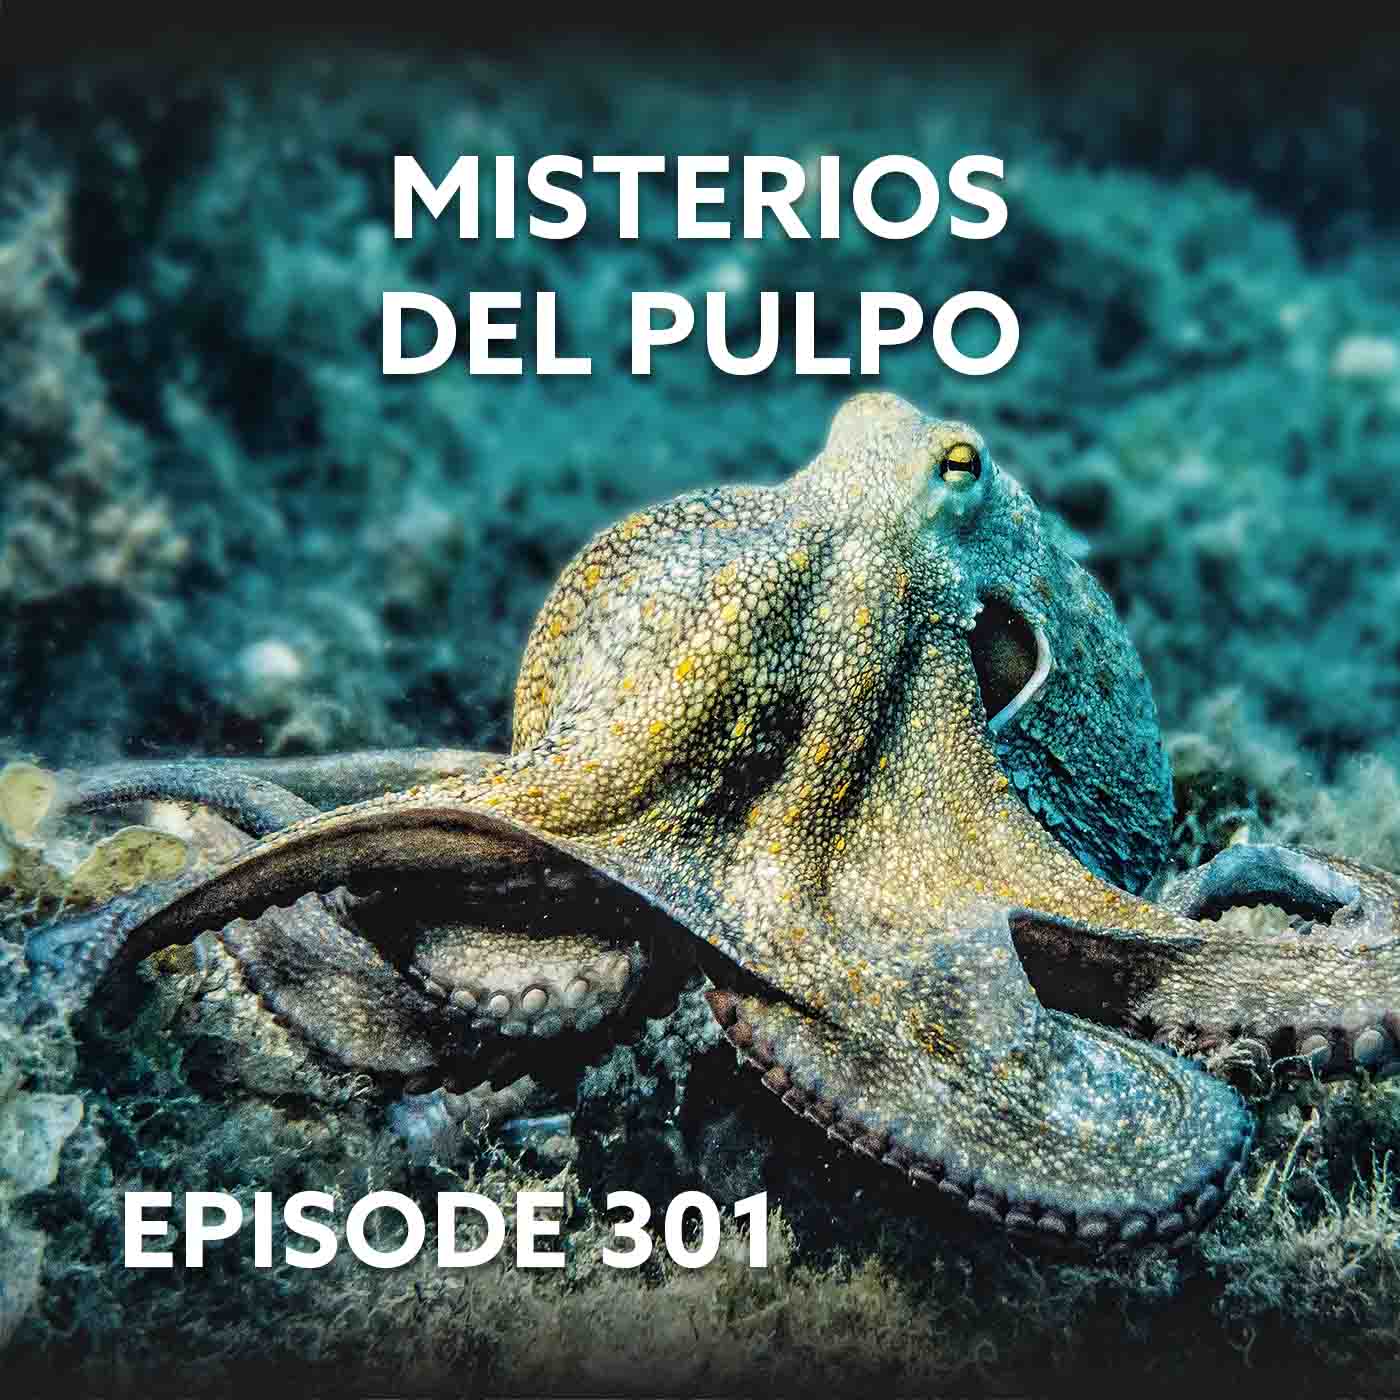 Episode 301 – Misterios del Pulpo